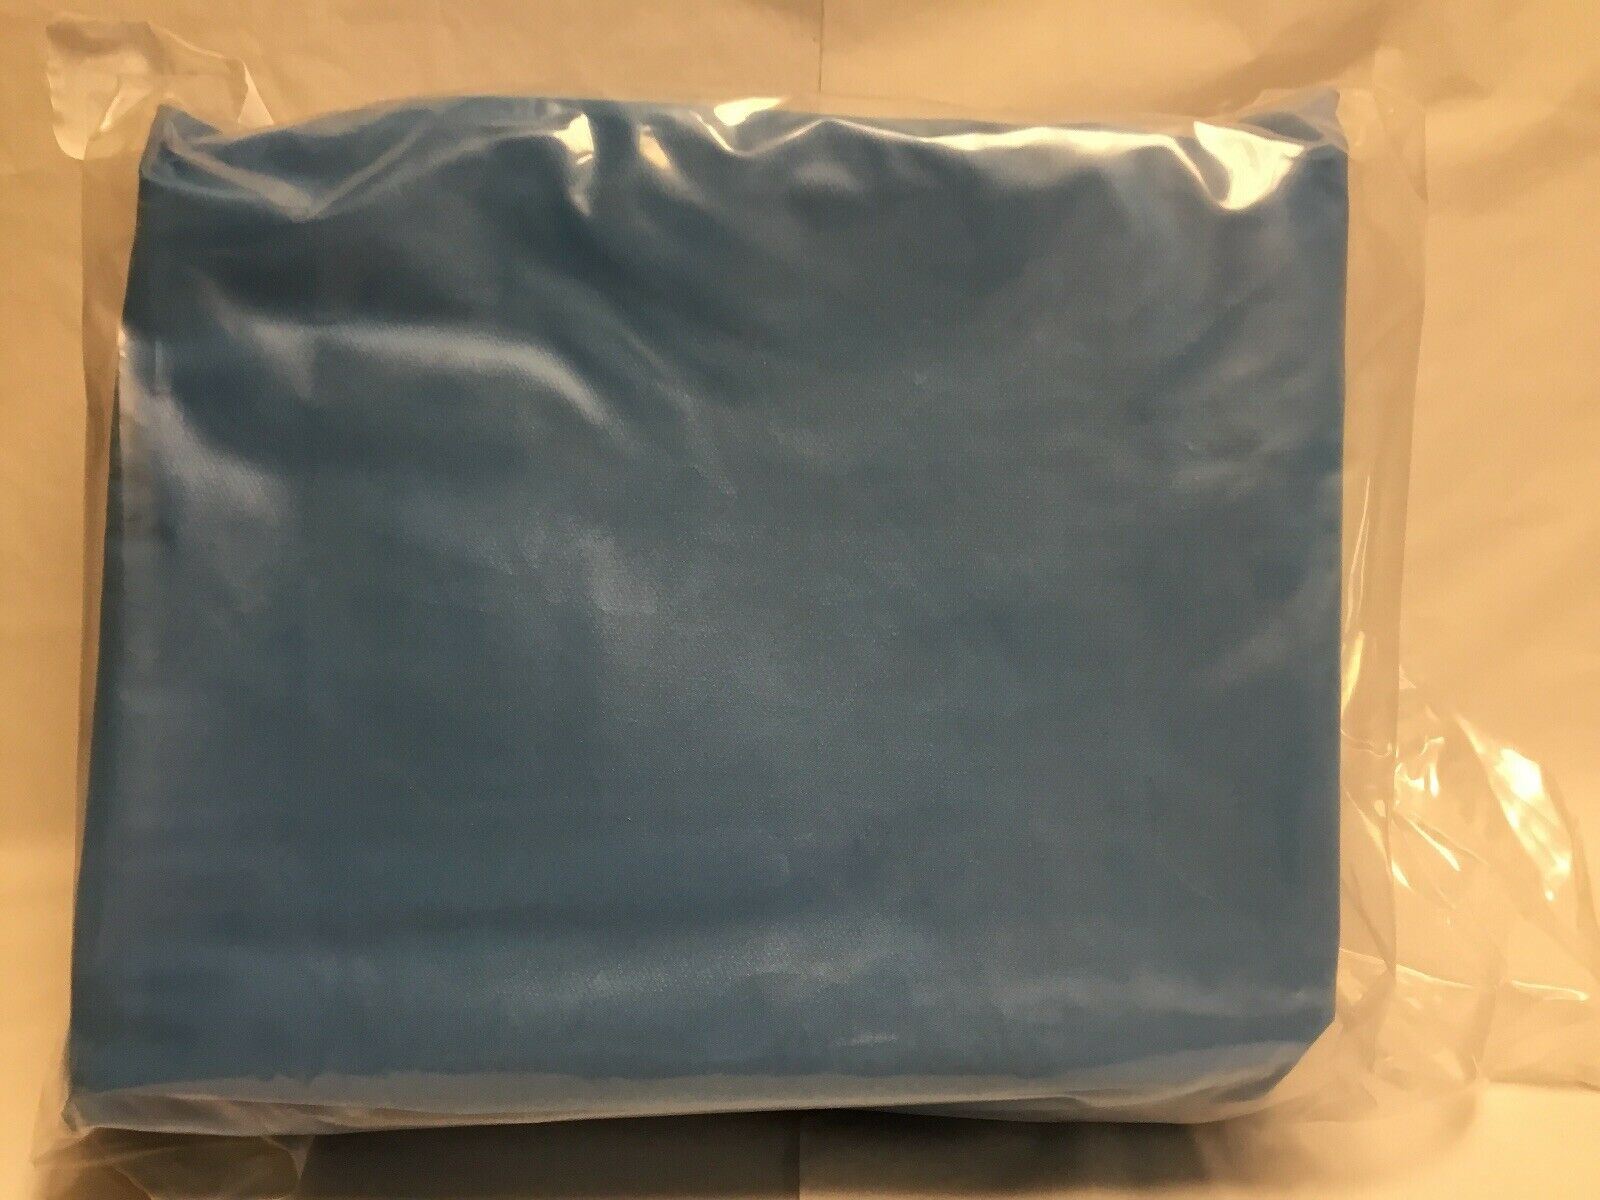 Medline Vaginal Delivery Pack (41KMD) DIAGNOSTIC ULTRASOUND MACHINES FOR SALE